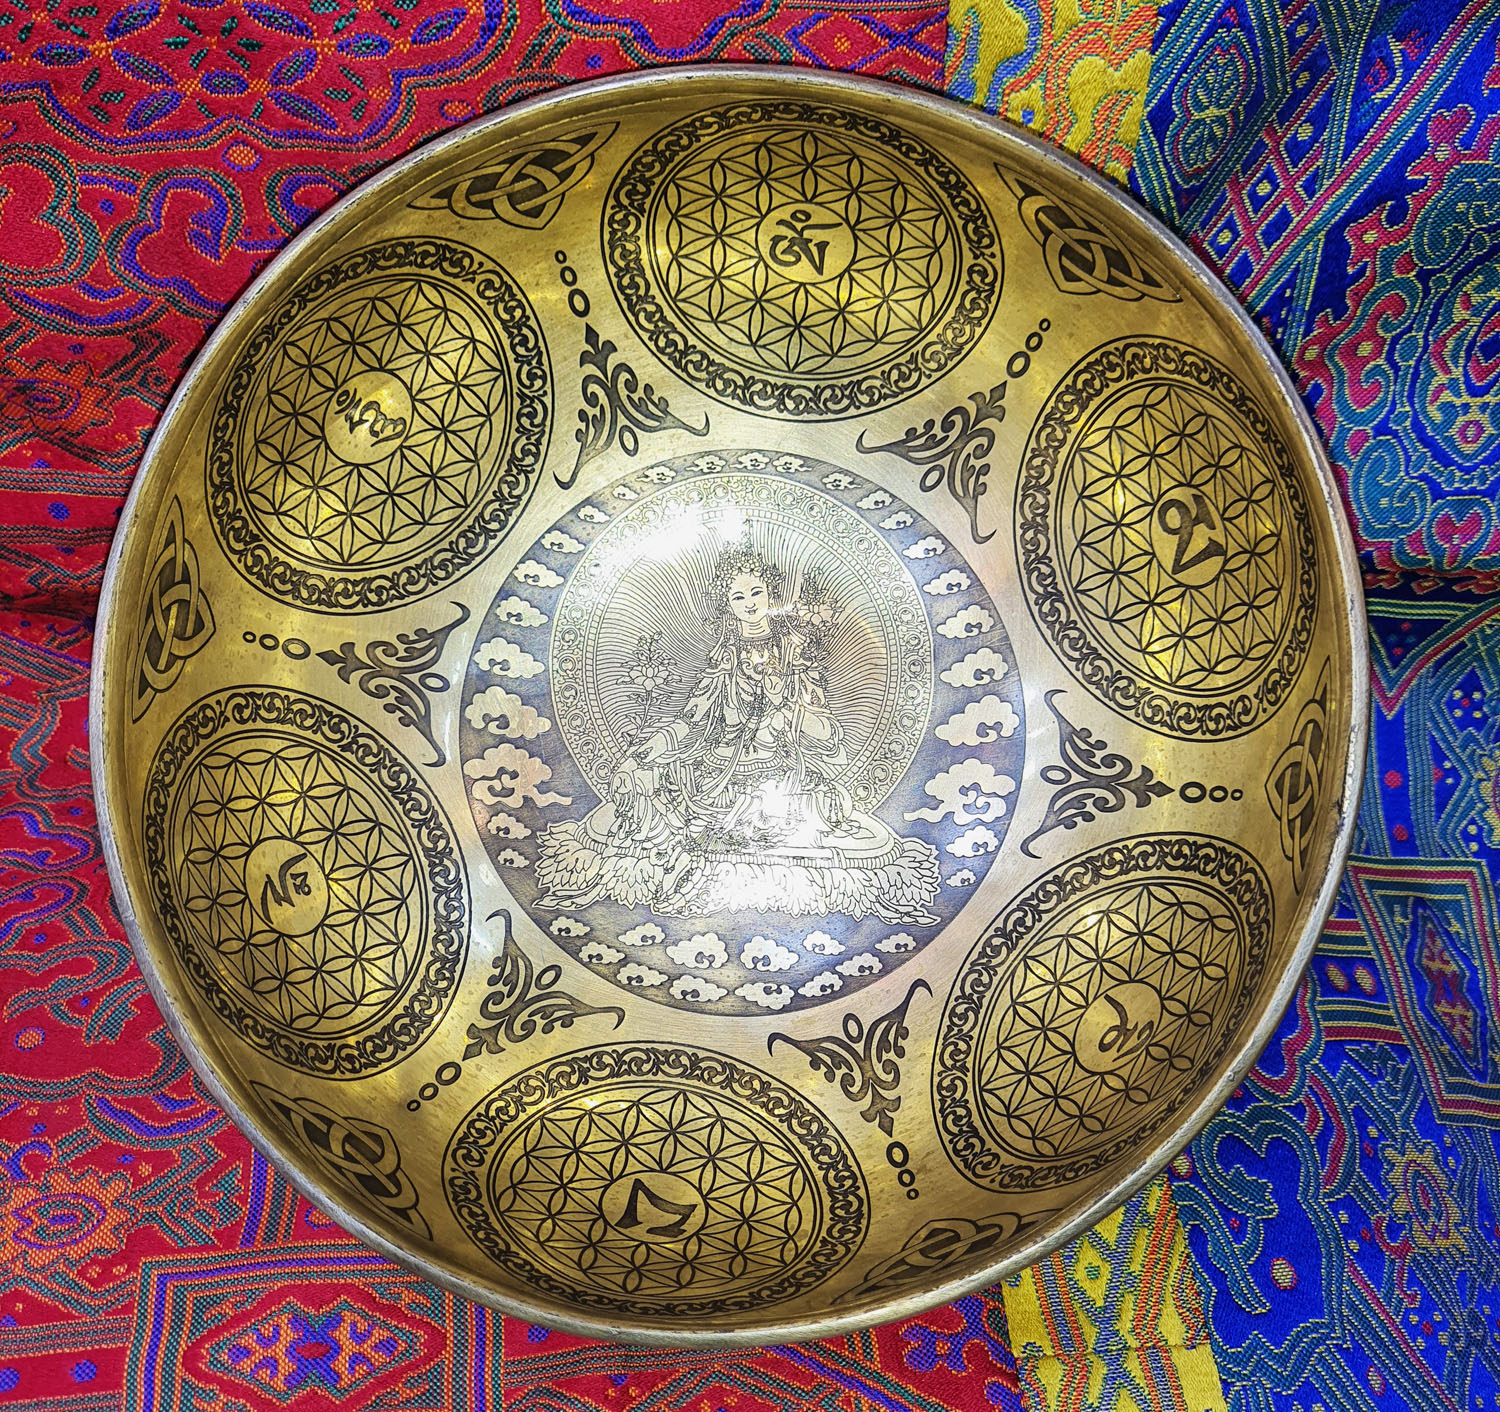 Green Tara With Mandalas Hand-Made Singing Bowls From Nepal